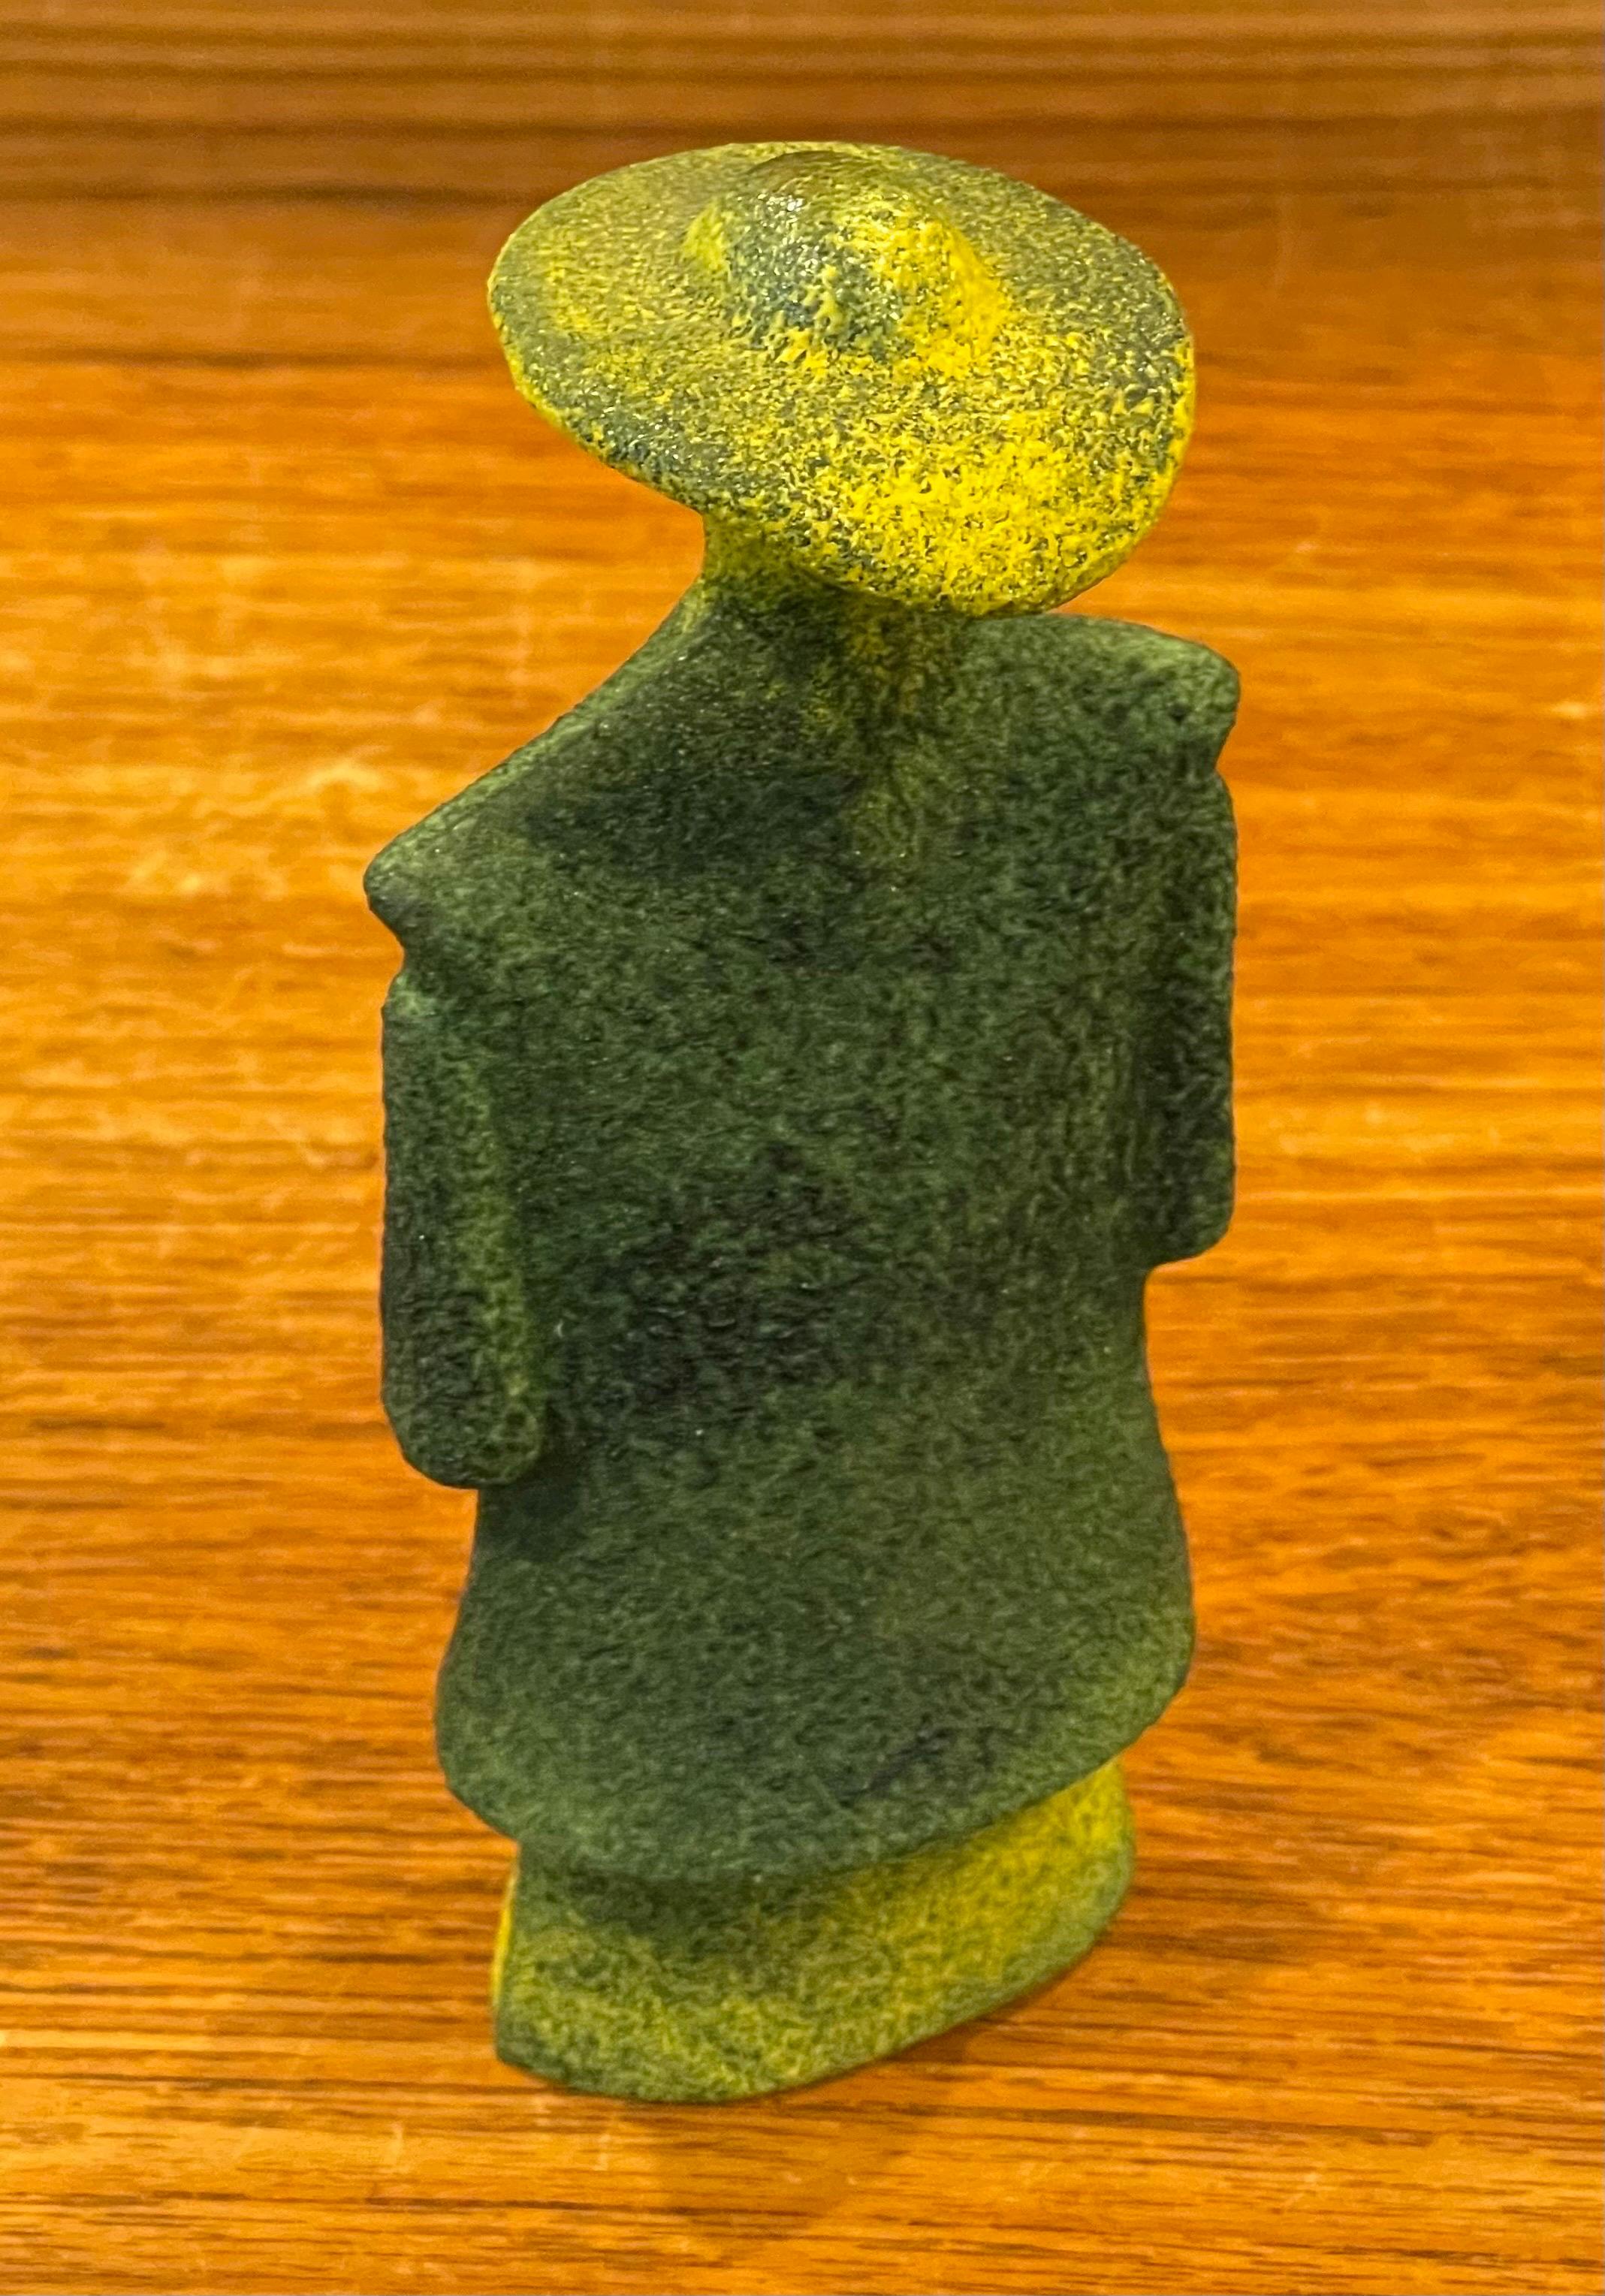 Swedish Poncho Green Art Glass Catwalk Sculpture by Kjell Engman for Kosta Boda Sweden For Sale